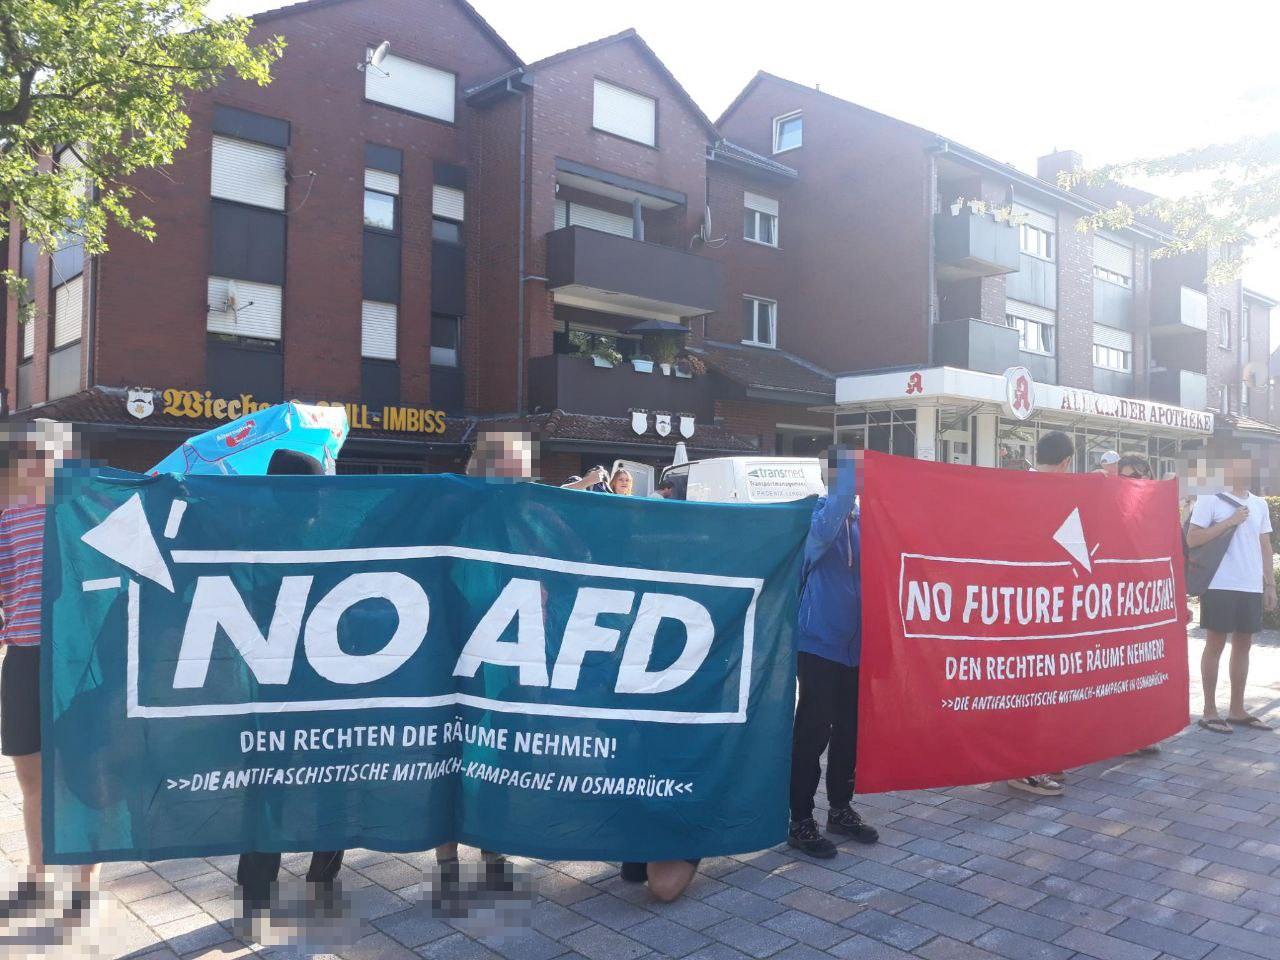 Am 9. September protestierte die Kampagne "Den Rechten die Räume nehmen" im Wallenhorster Dorfkern. / Foto: Mitmachkampagne Den Rechten die Räume nehmen